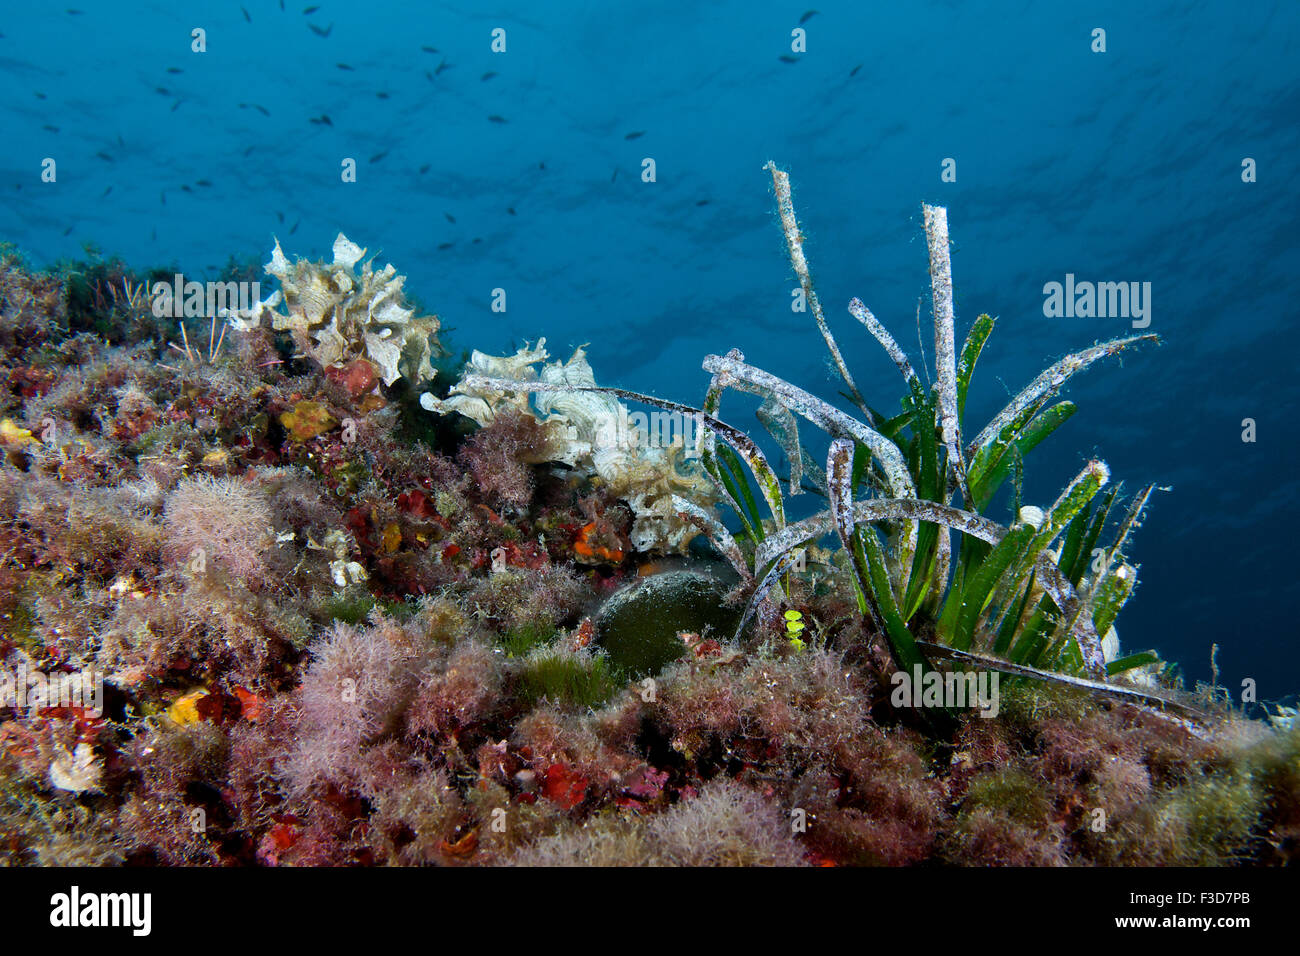 Escena submarina llena de especies marinas (Posidonia, briozoos, esponjas, algas, peces) en el Parque Natural de Ses Salines en Formentera, Islas Baleares, España) Foto de stock